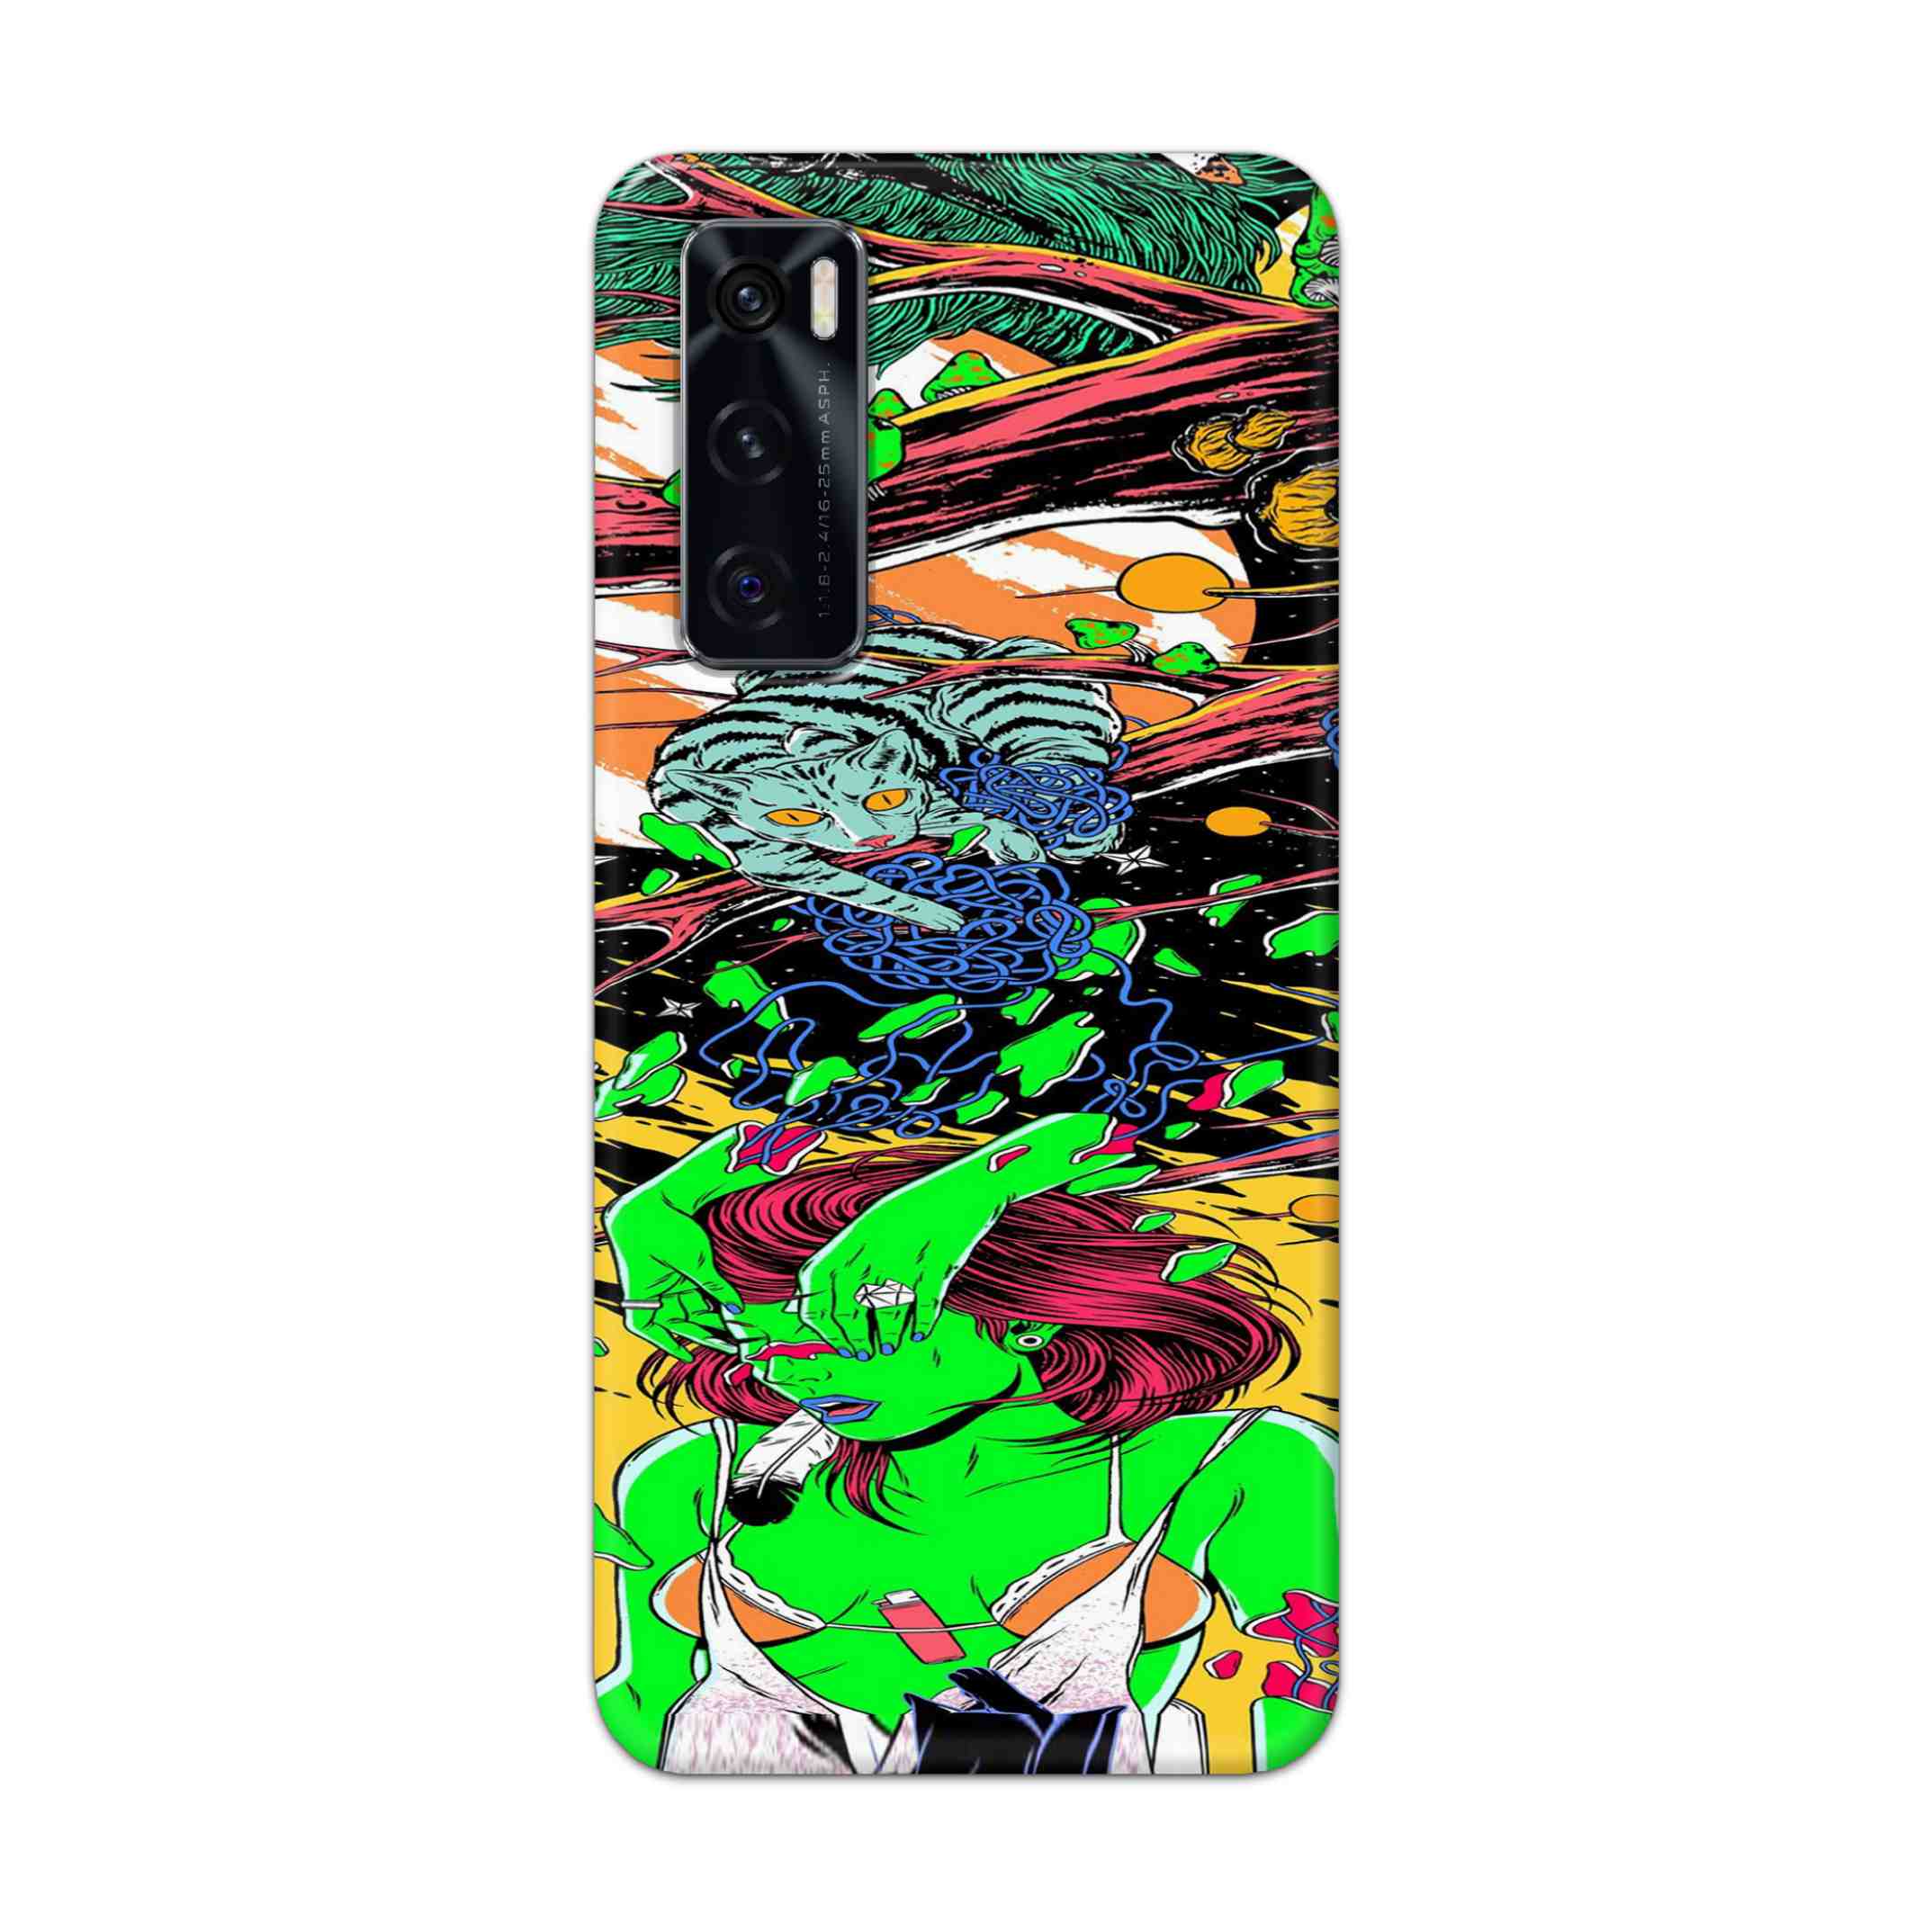 Buy Green Girl Art Hard Back Mobile Phone Case Cover For Vivo V20 SE Online